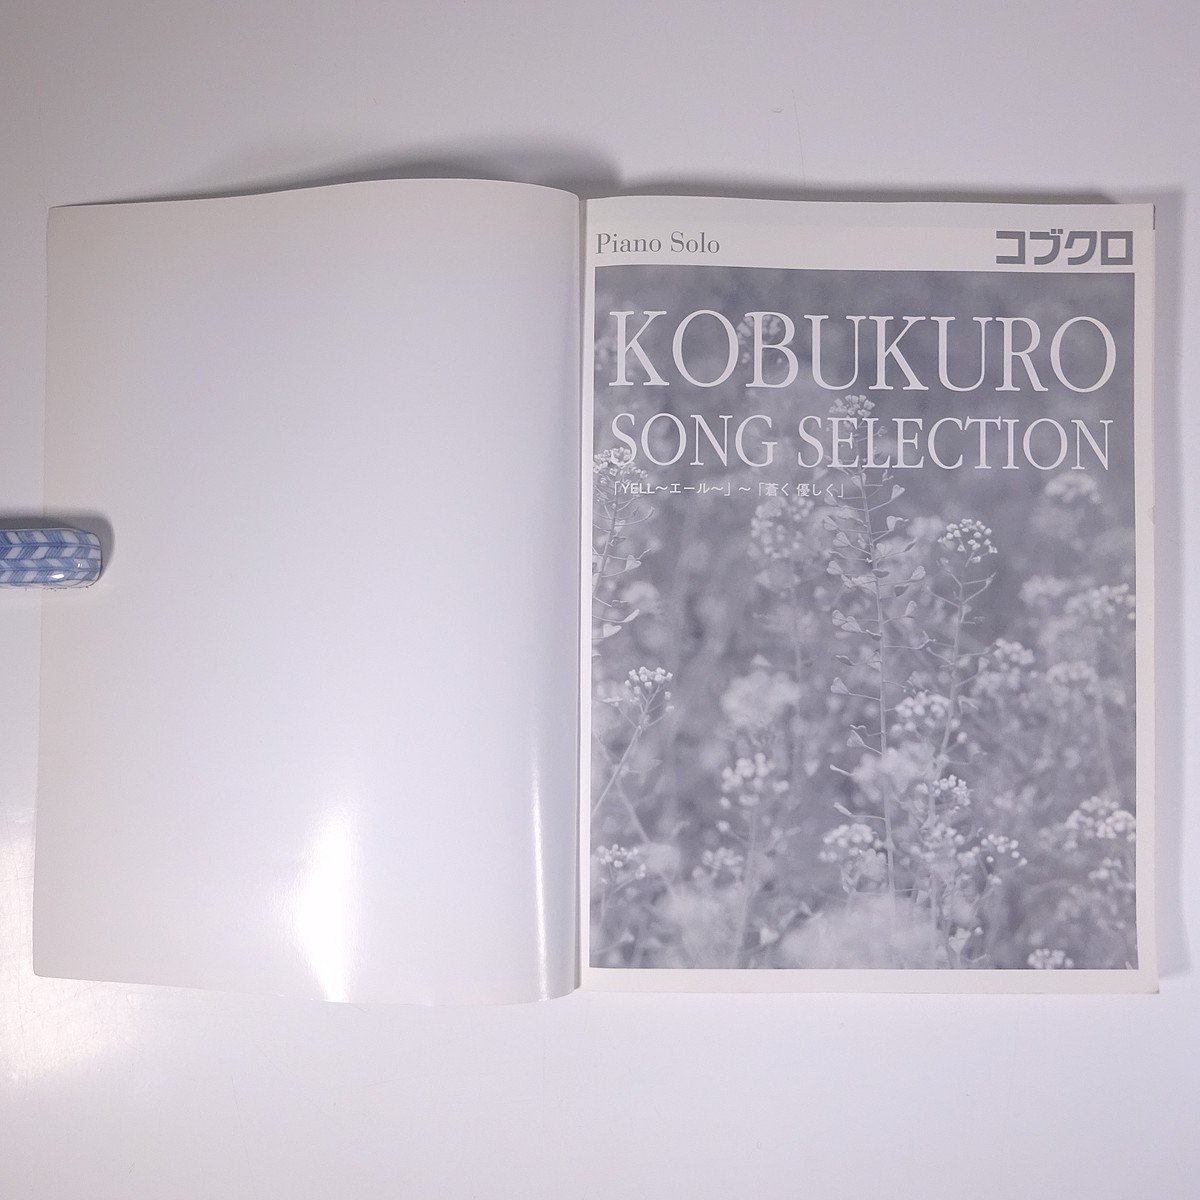 [ музыкальное сопровождение ] Kobukuro SONG SELECTION фортепьяно * Solo средний класс YAMAHA Yamaha 2008 большой книга@ музыка Японская музыка фортепьяно [YELLe-ru]~[.. мягко ]